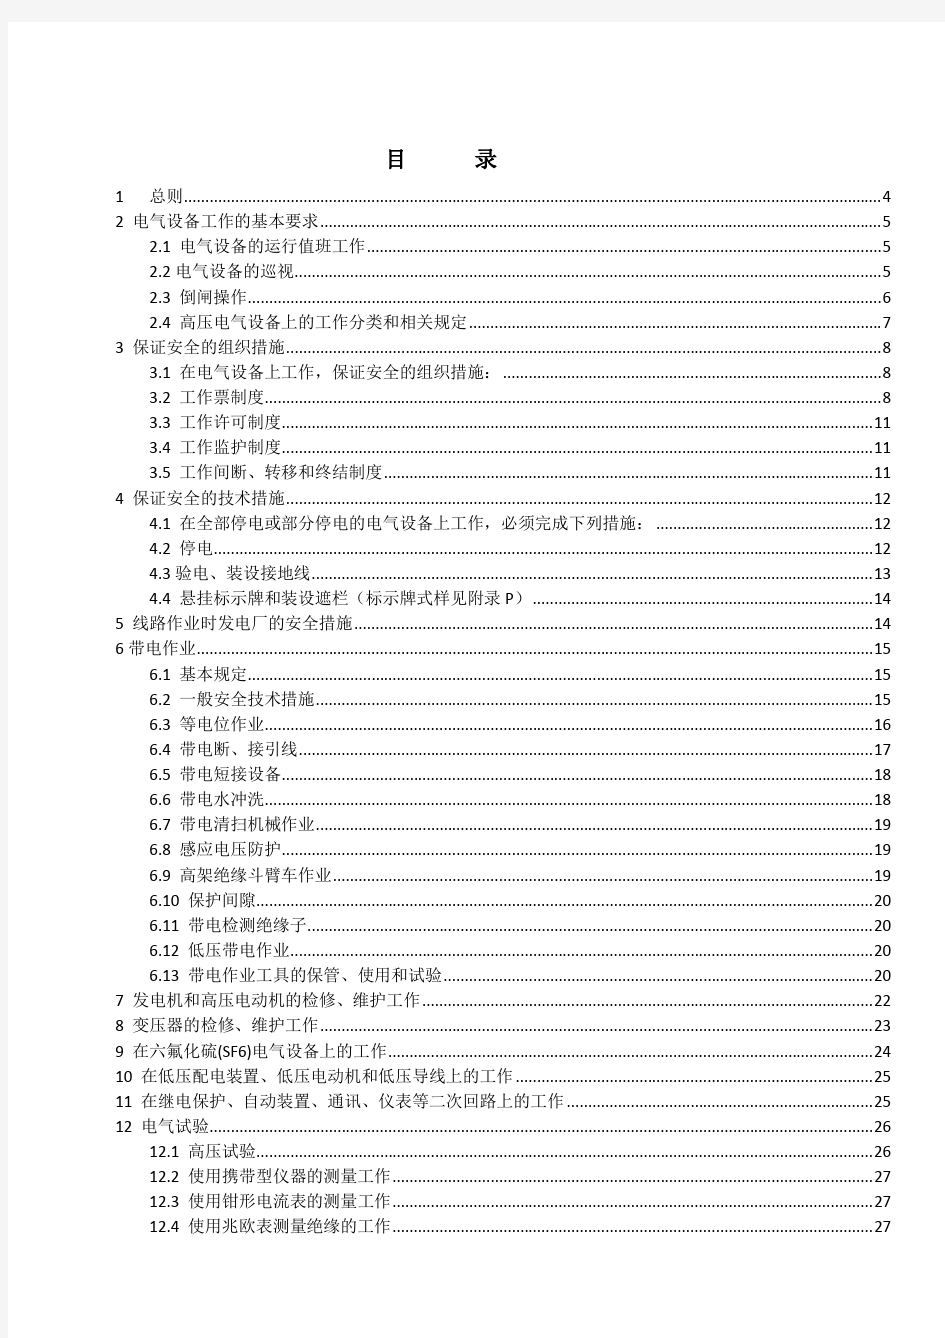 中国华能集团公司电力安全工作规程(电气部分)